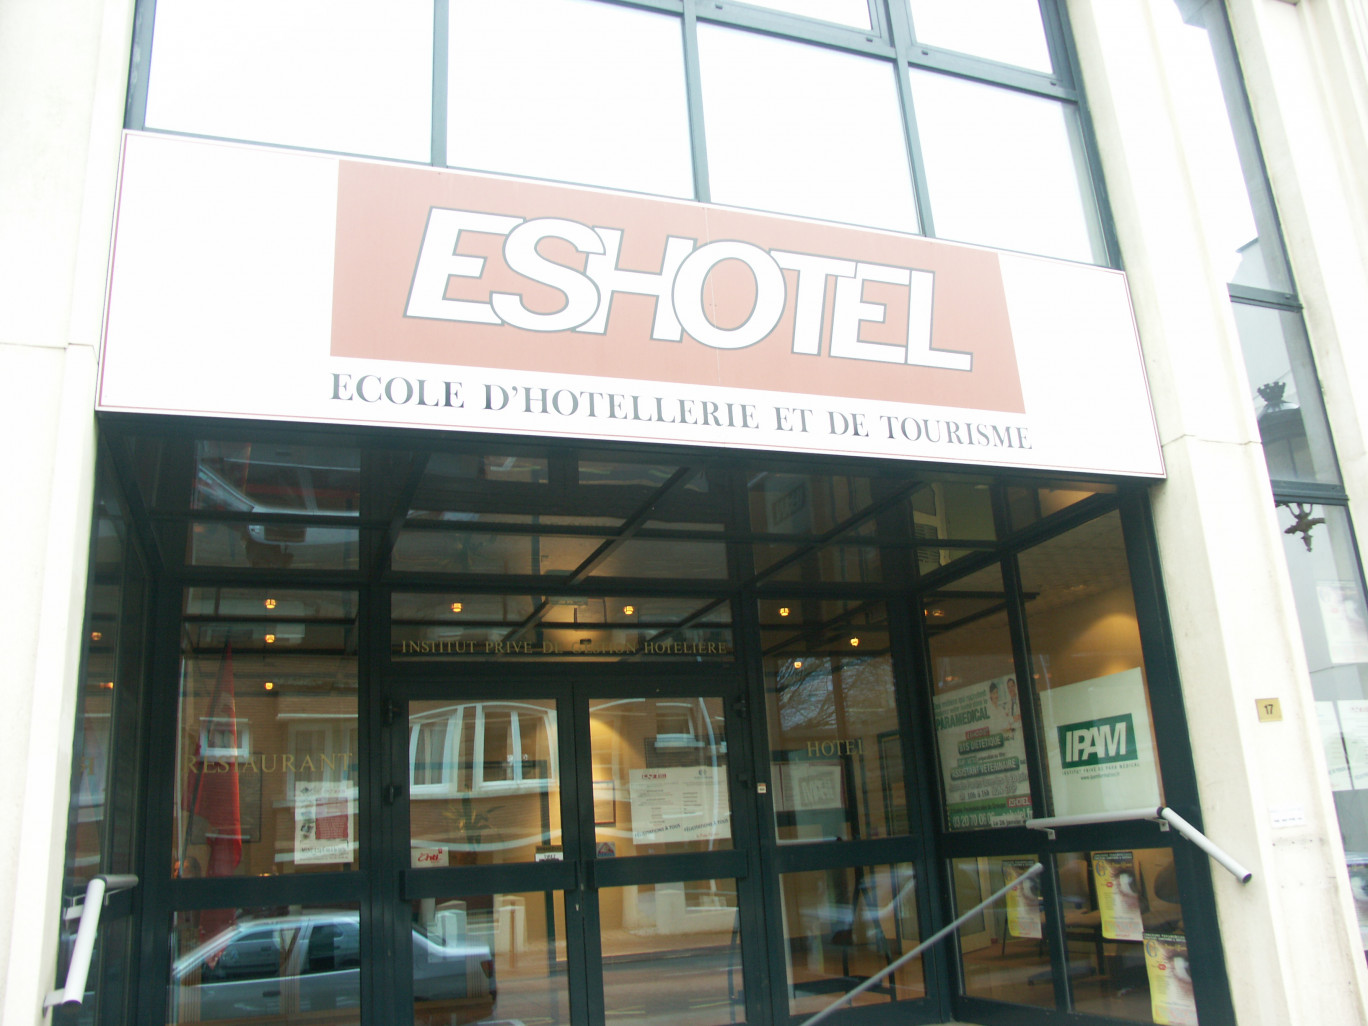 L'ES Hotel et l'IPAM se situent dans le même bâtiment historique de l'école hôtelière, à Tourcoing.